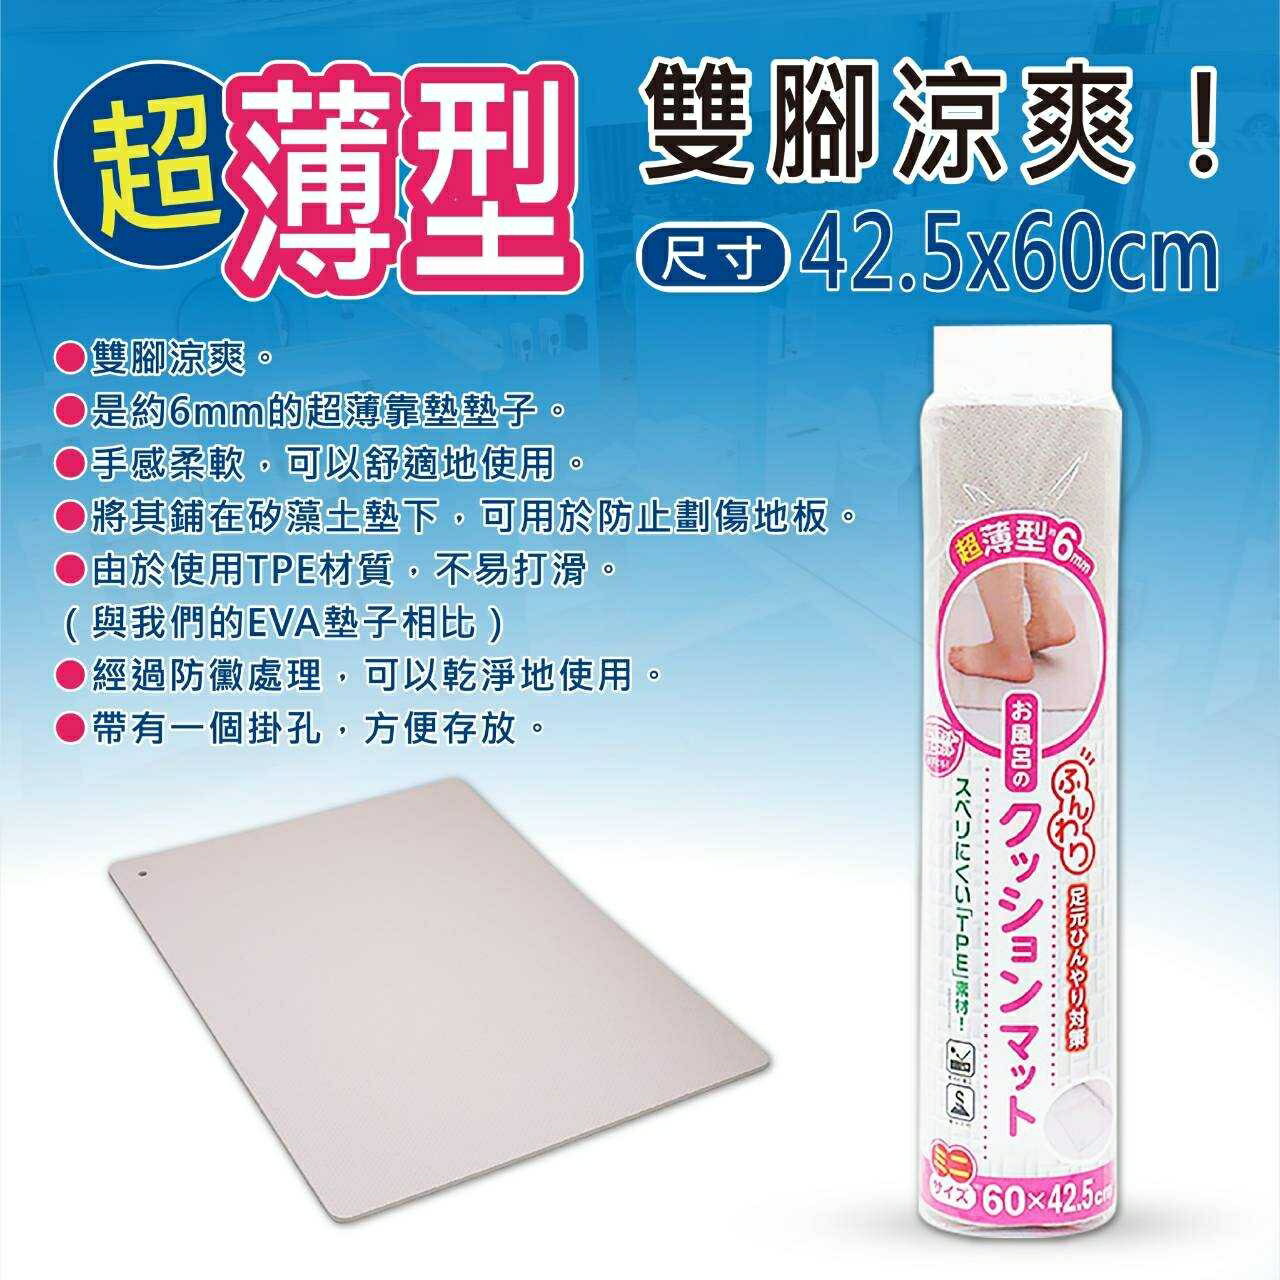 洗樂適衛浴-超薄型 防黴 防滑 地墊